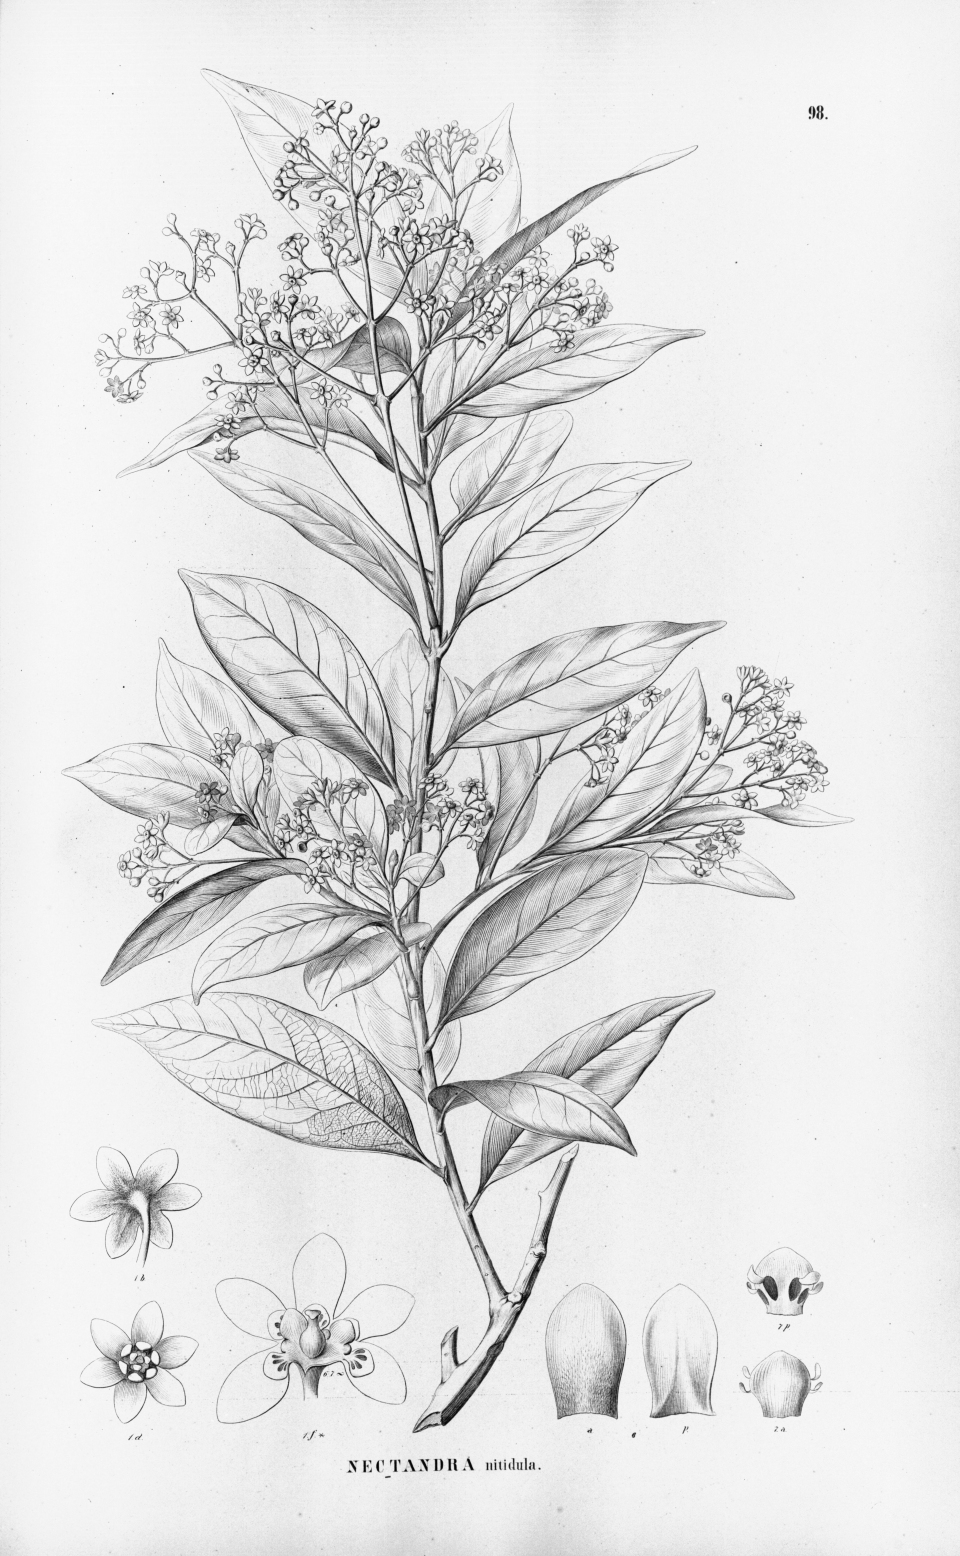 Nectandra nitidula